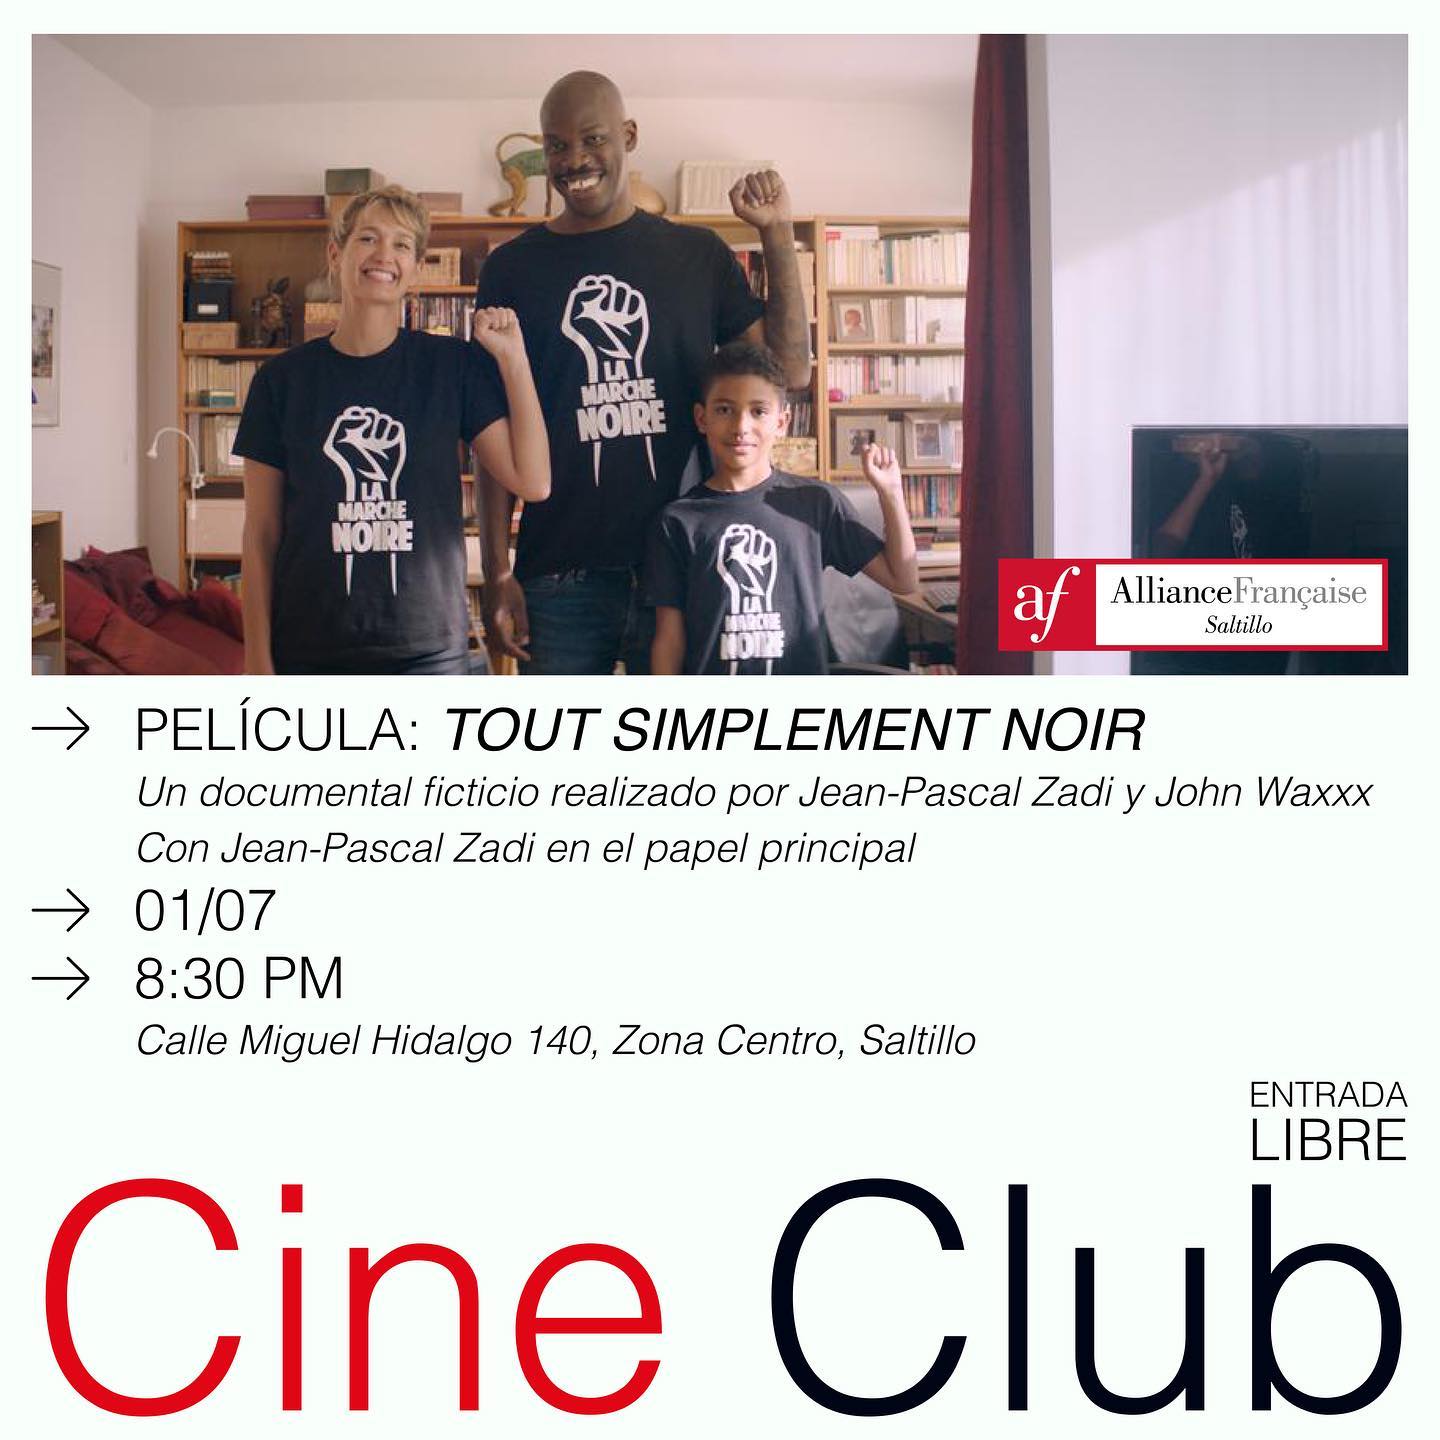 Cine Club película “Tout simplement noir”